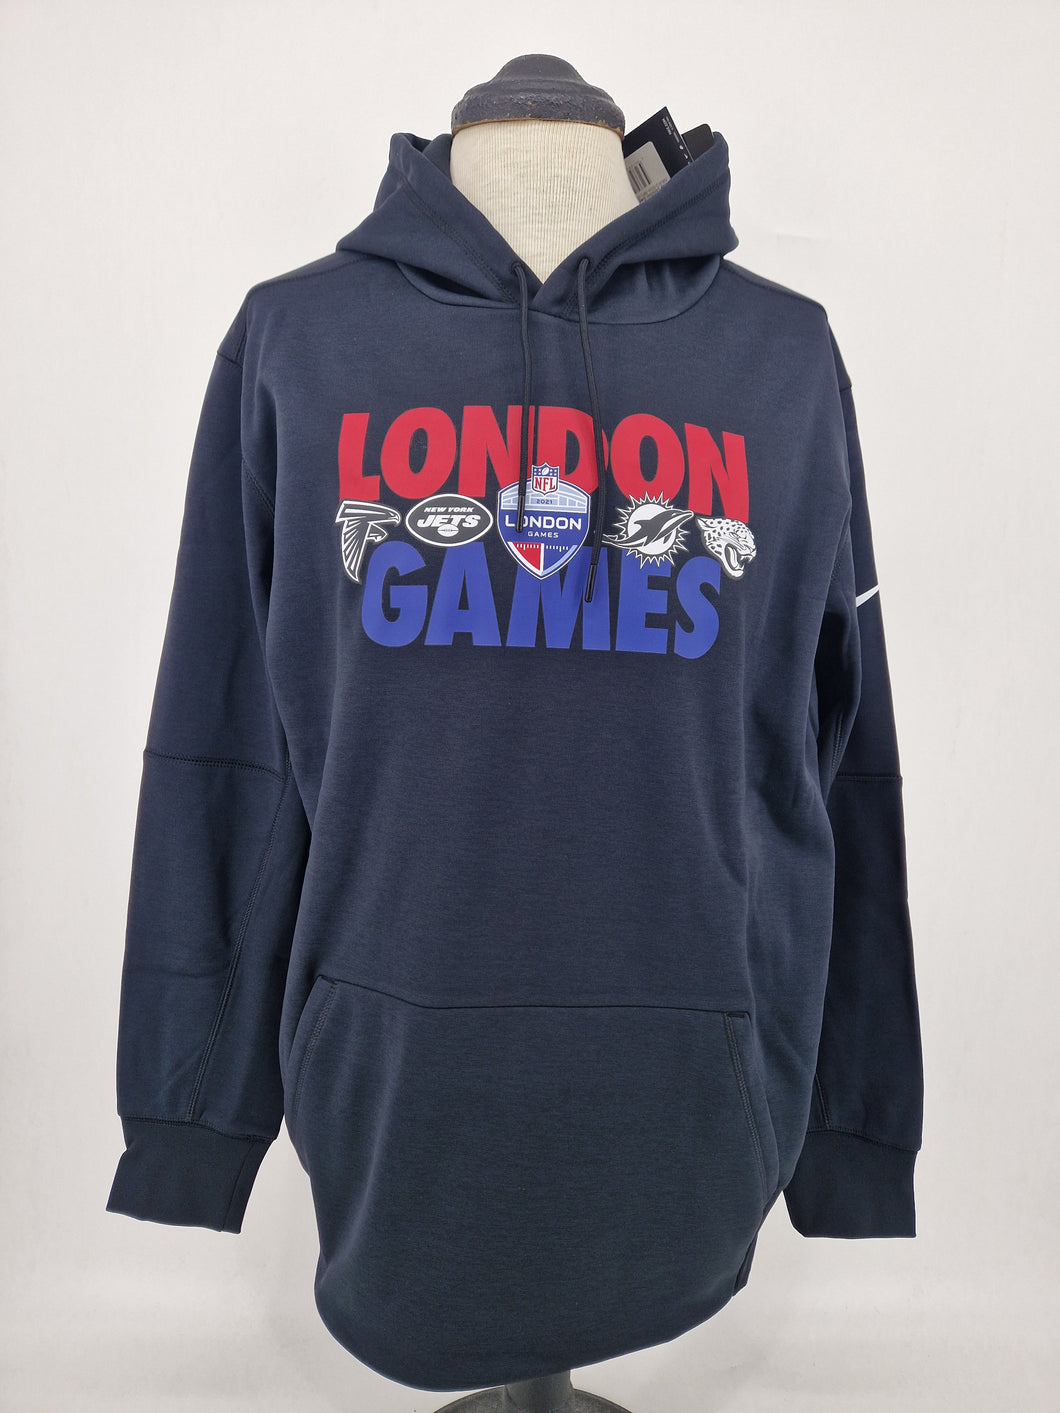 Nike NFL London Games 2020 official Hoodie sweatshirt